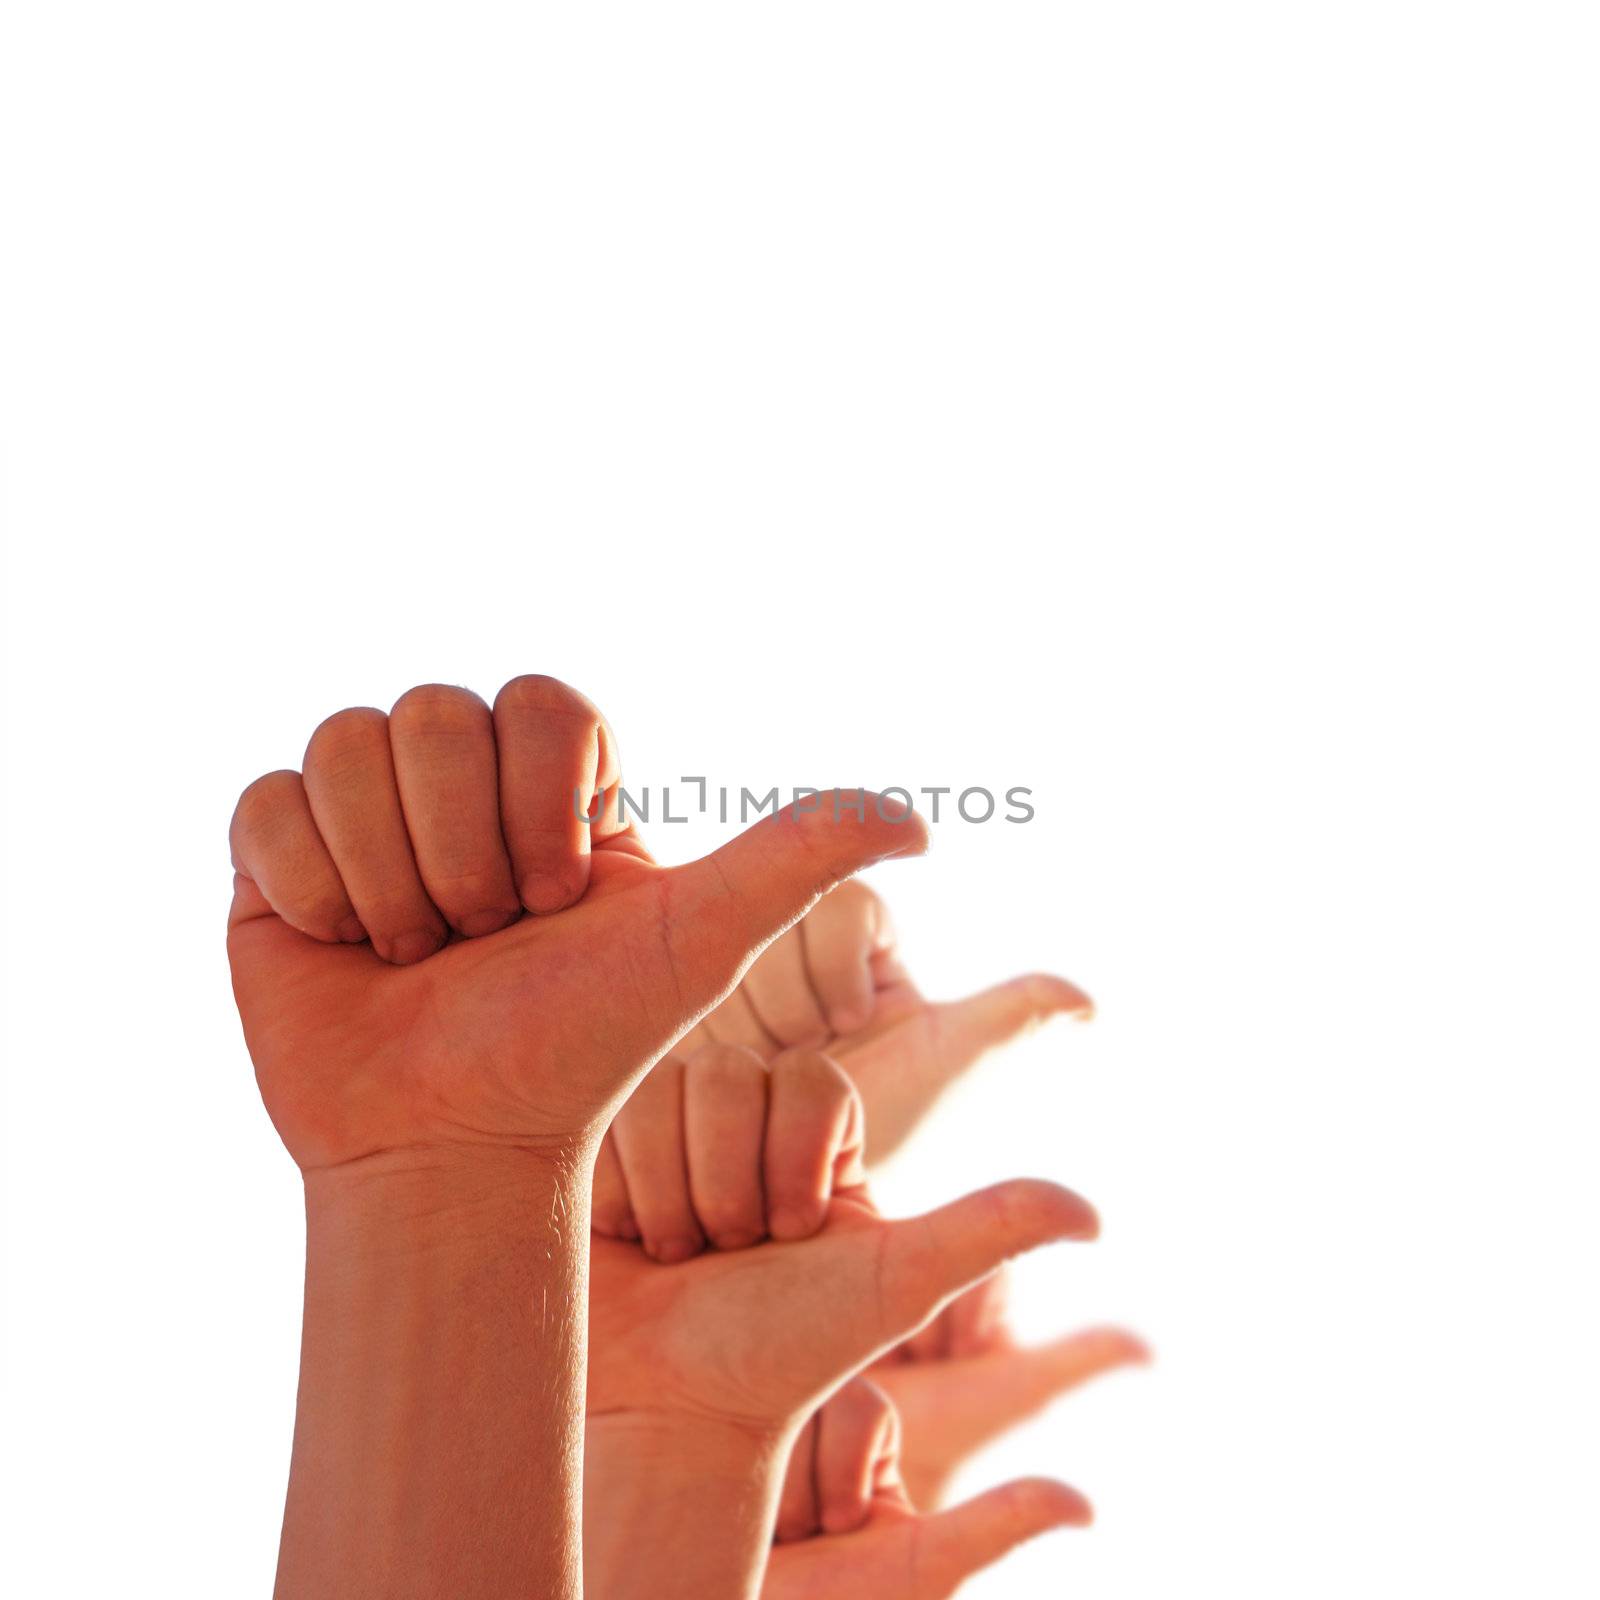 men's hands make thumbs up 